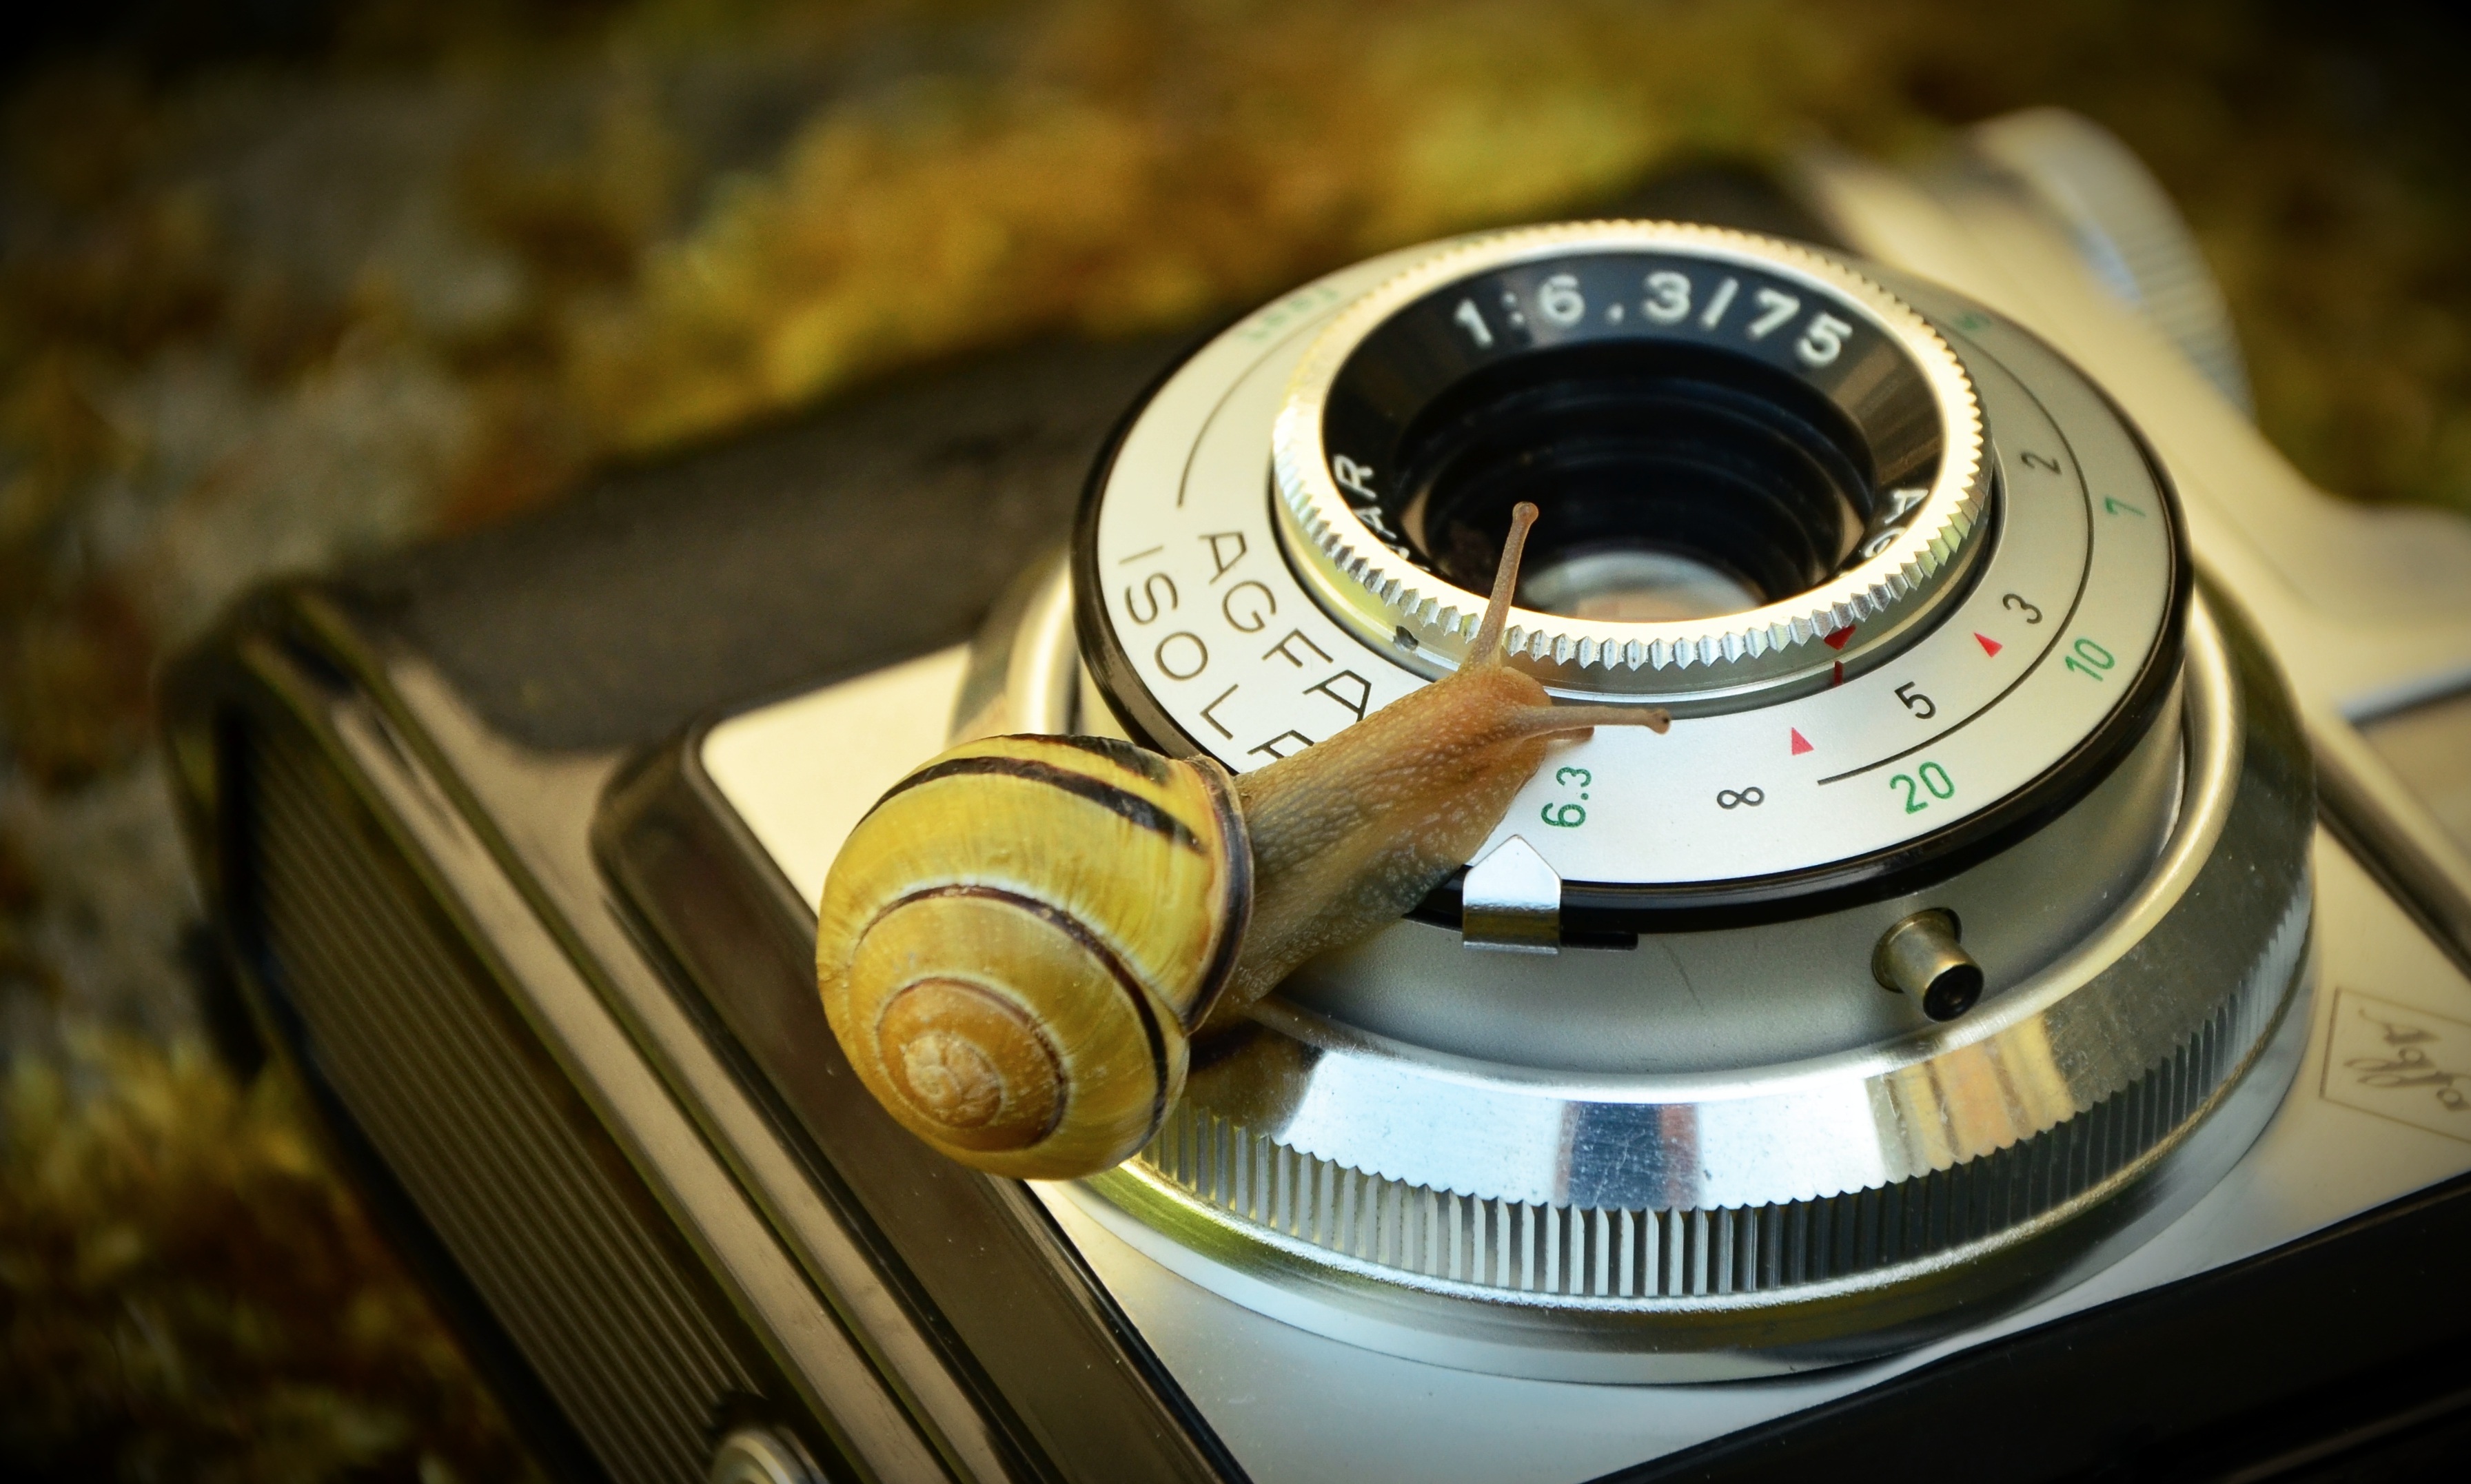 Curious snail on an Agfa camera by congerdesign